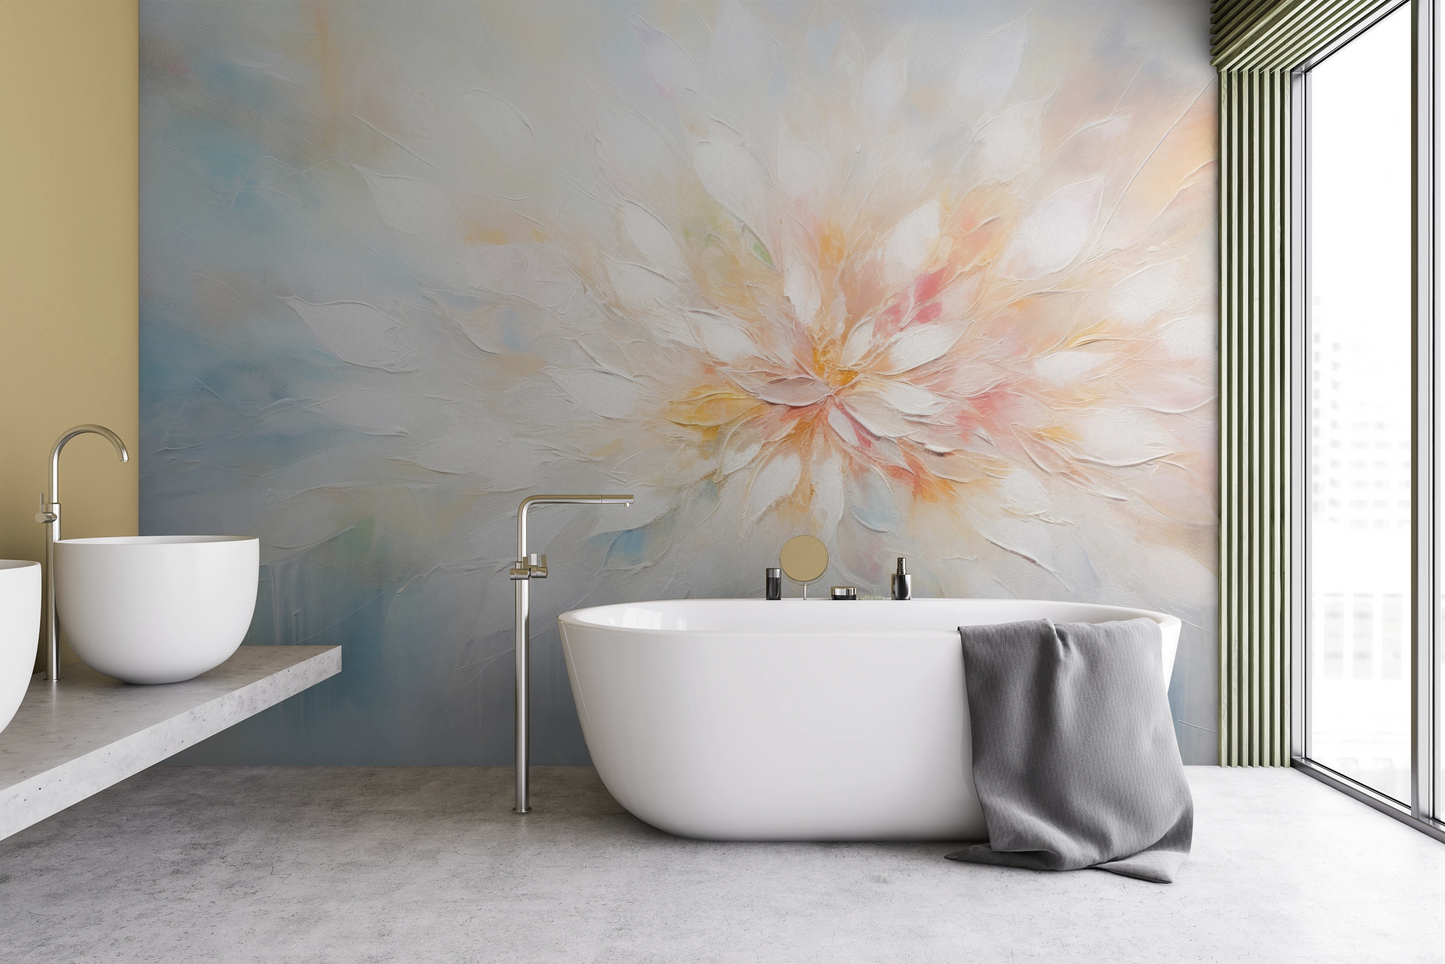 Fototapeta malowana o nazwie Ethereal Blossom pokazana w aranżacji wnętrza.